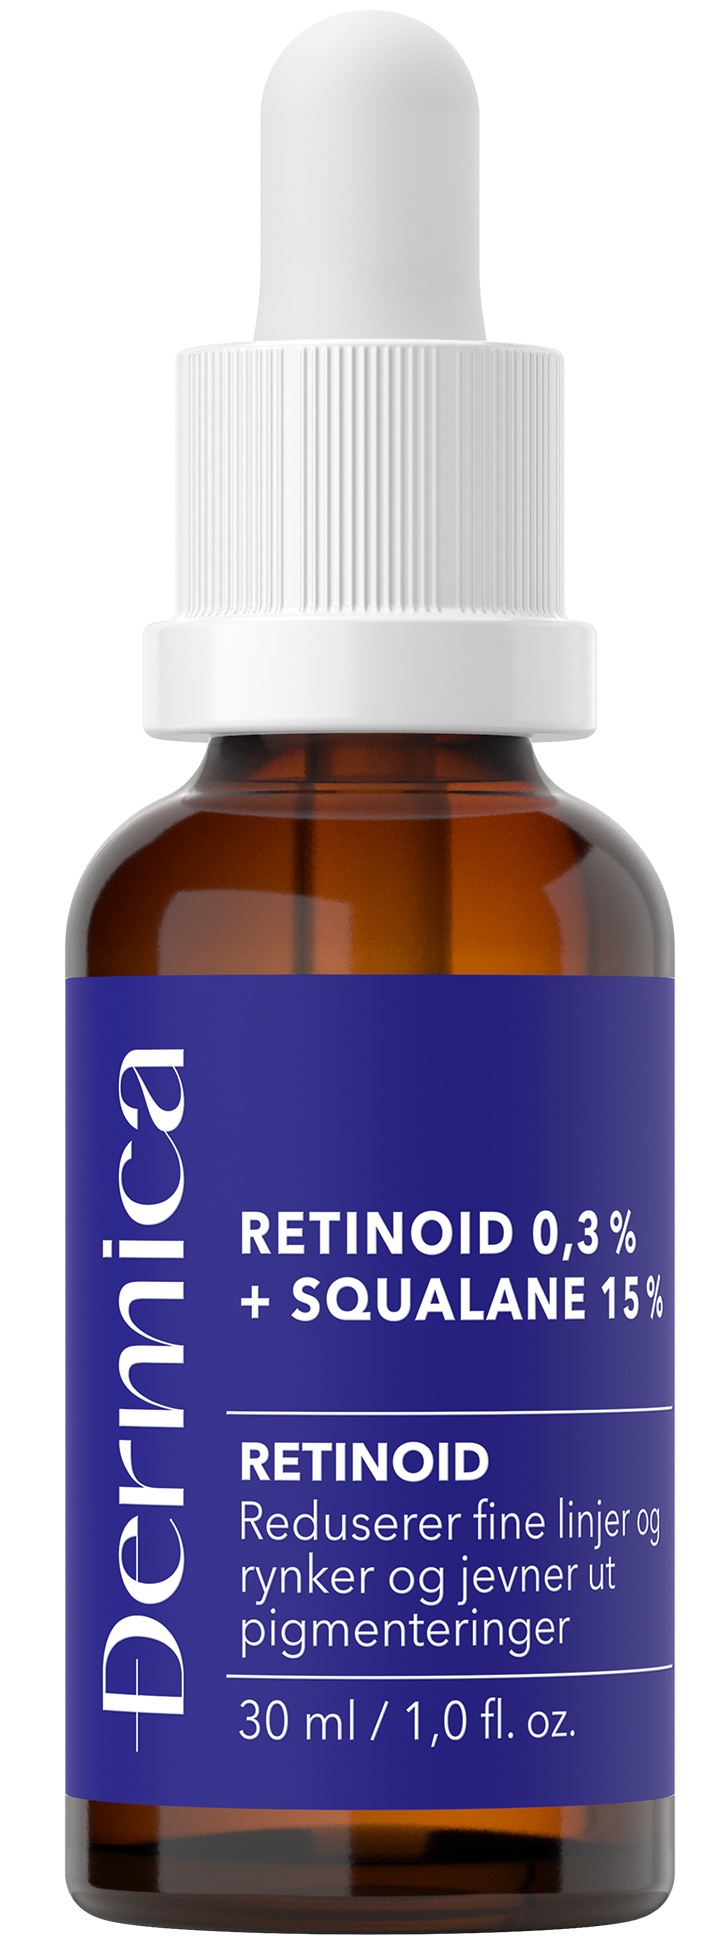 Dermica Retinoid 0,3 % + Squalane 15 %